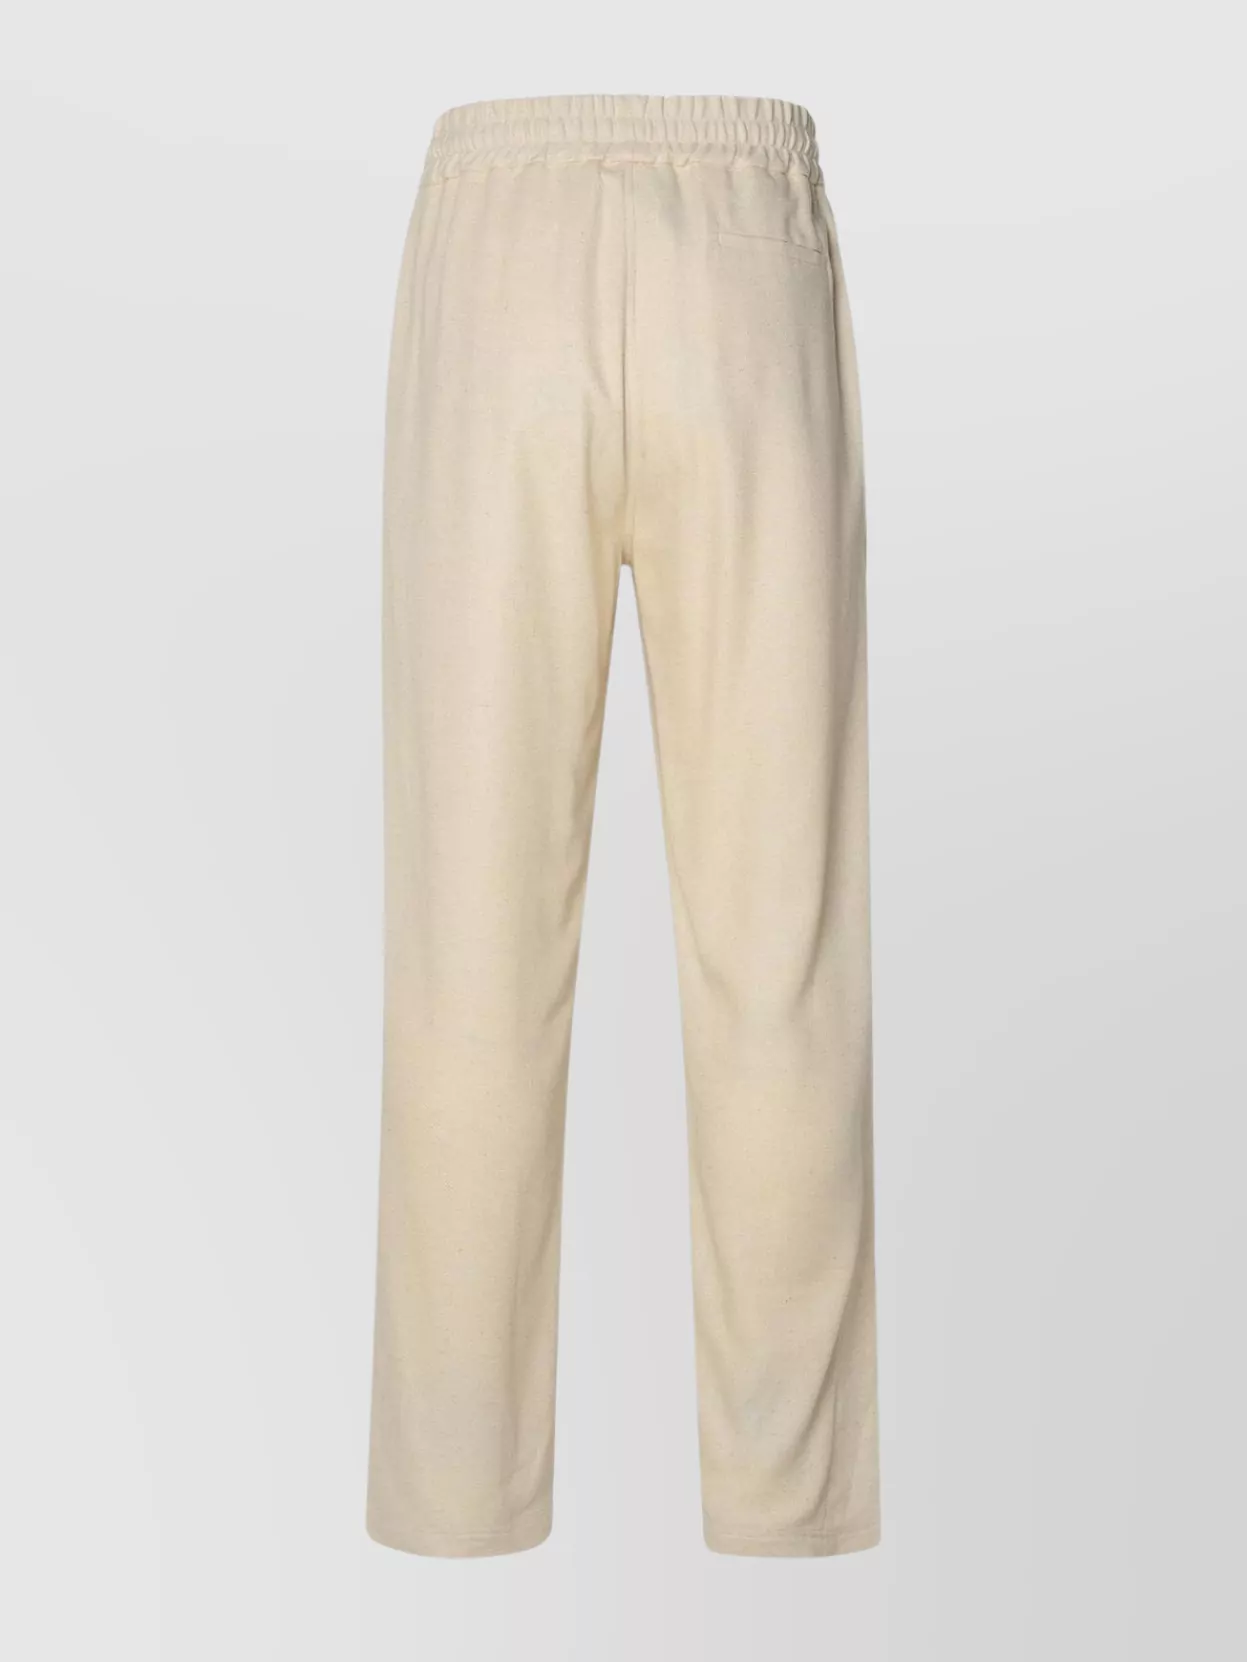 Shop Gcds Linen Blend Trousers Featuring Elastic Waistband